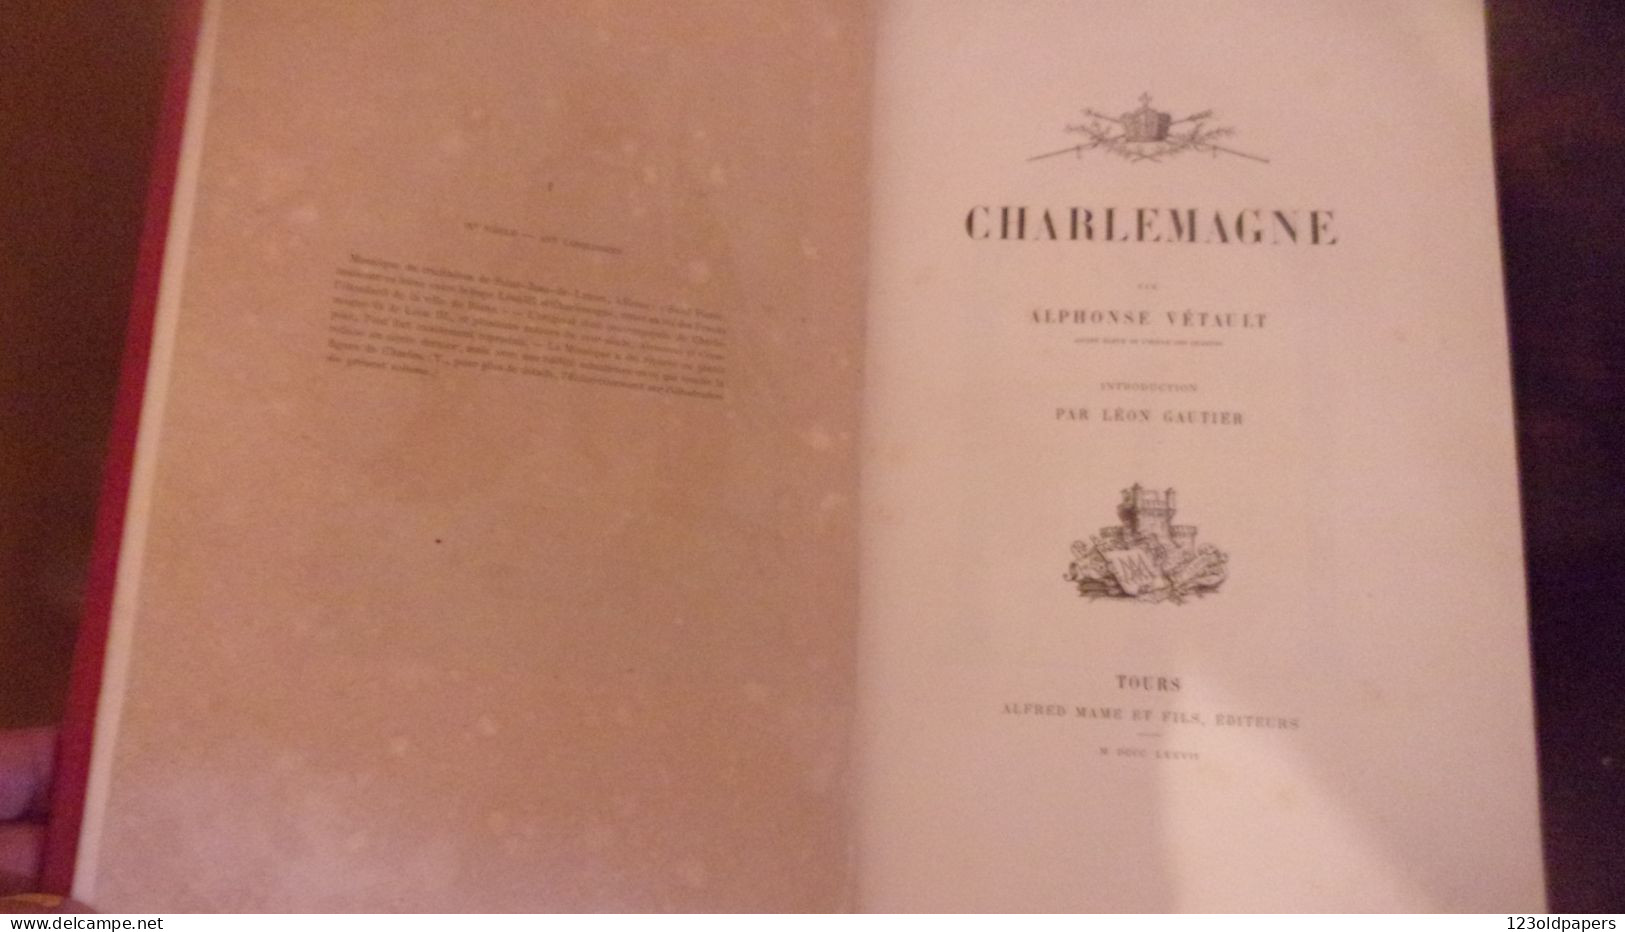 Charlemagne par Alphonse Vétault. Mame Tours 1877. Léon Gautier. beau cartonnage